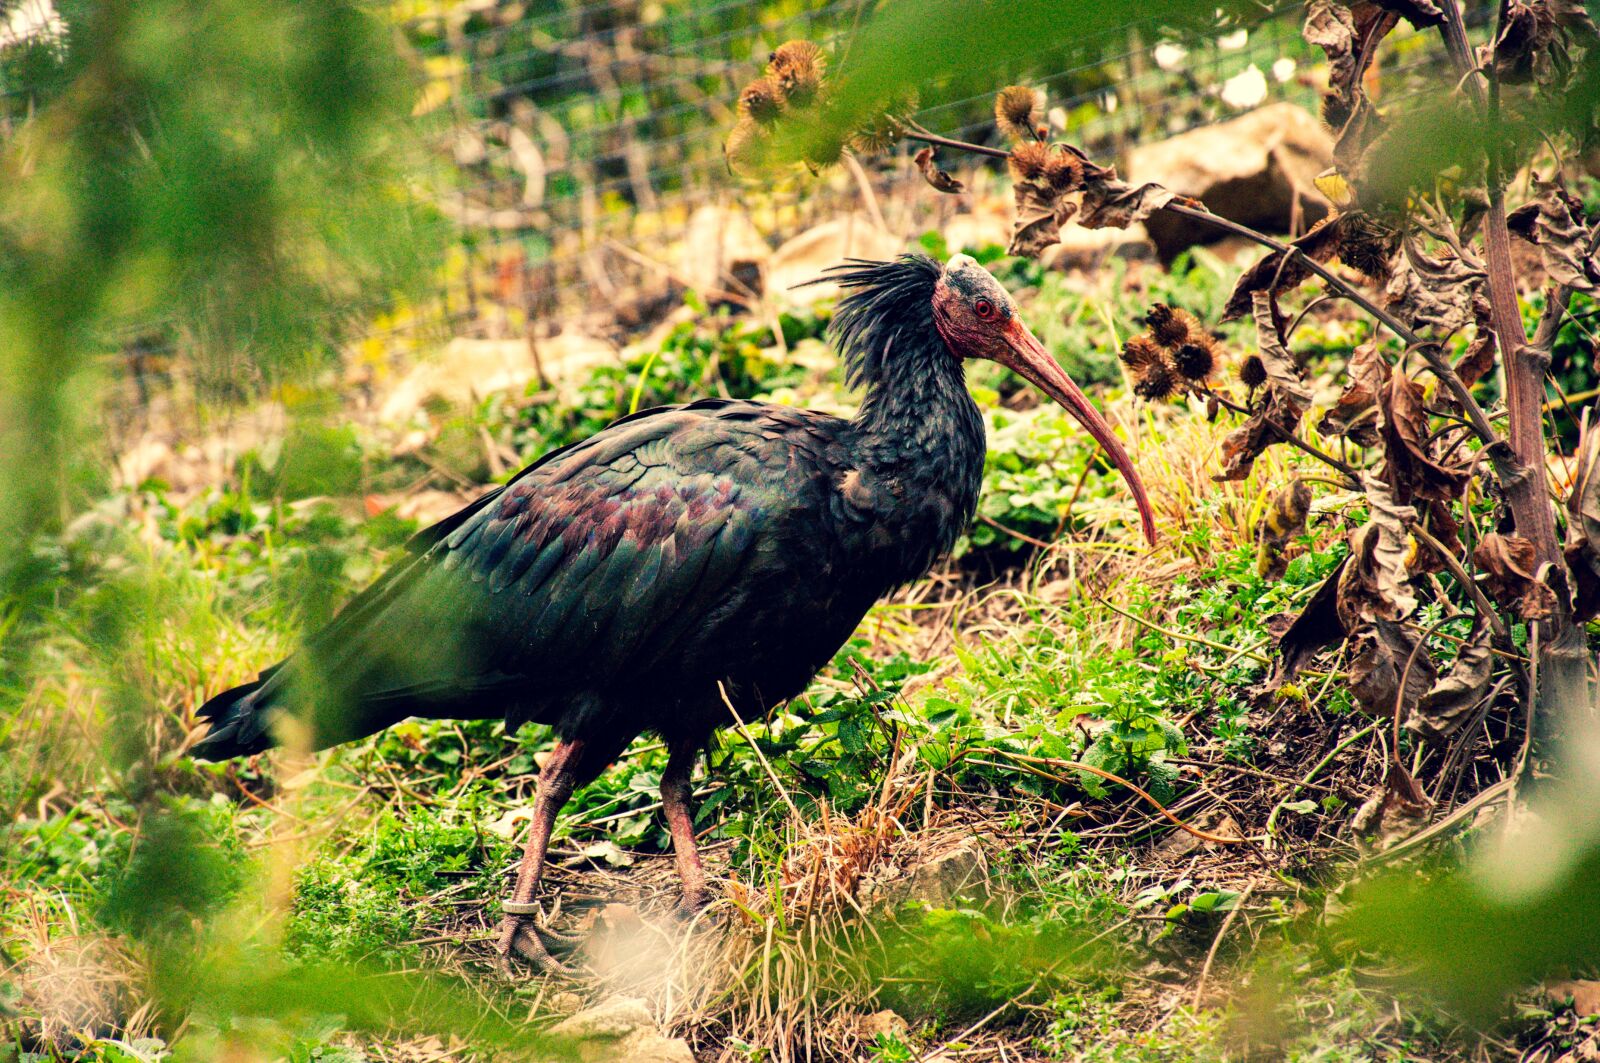 Nikon D90 sample photo. Bald ibis, birds, plumage photography